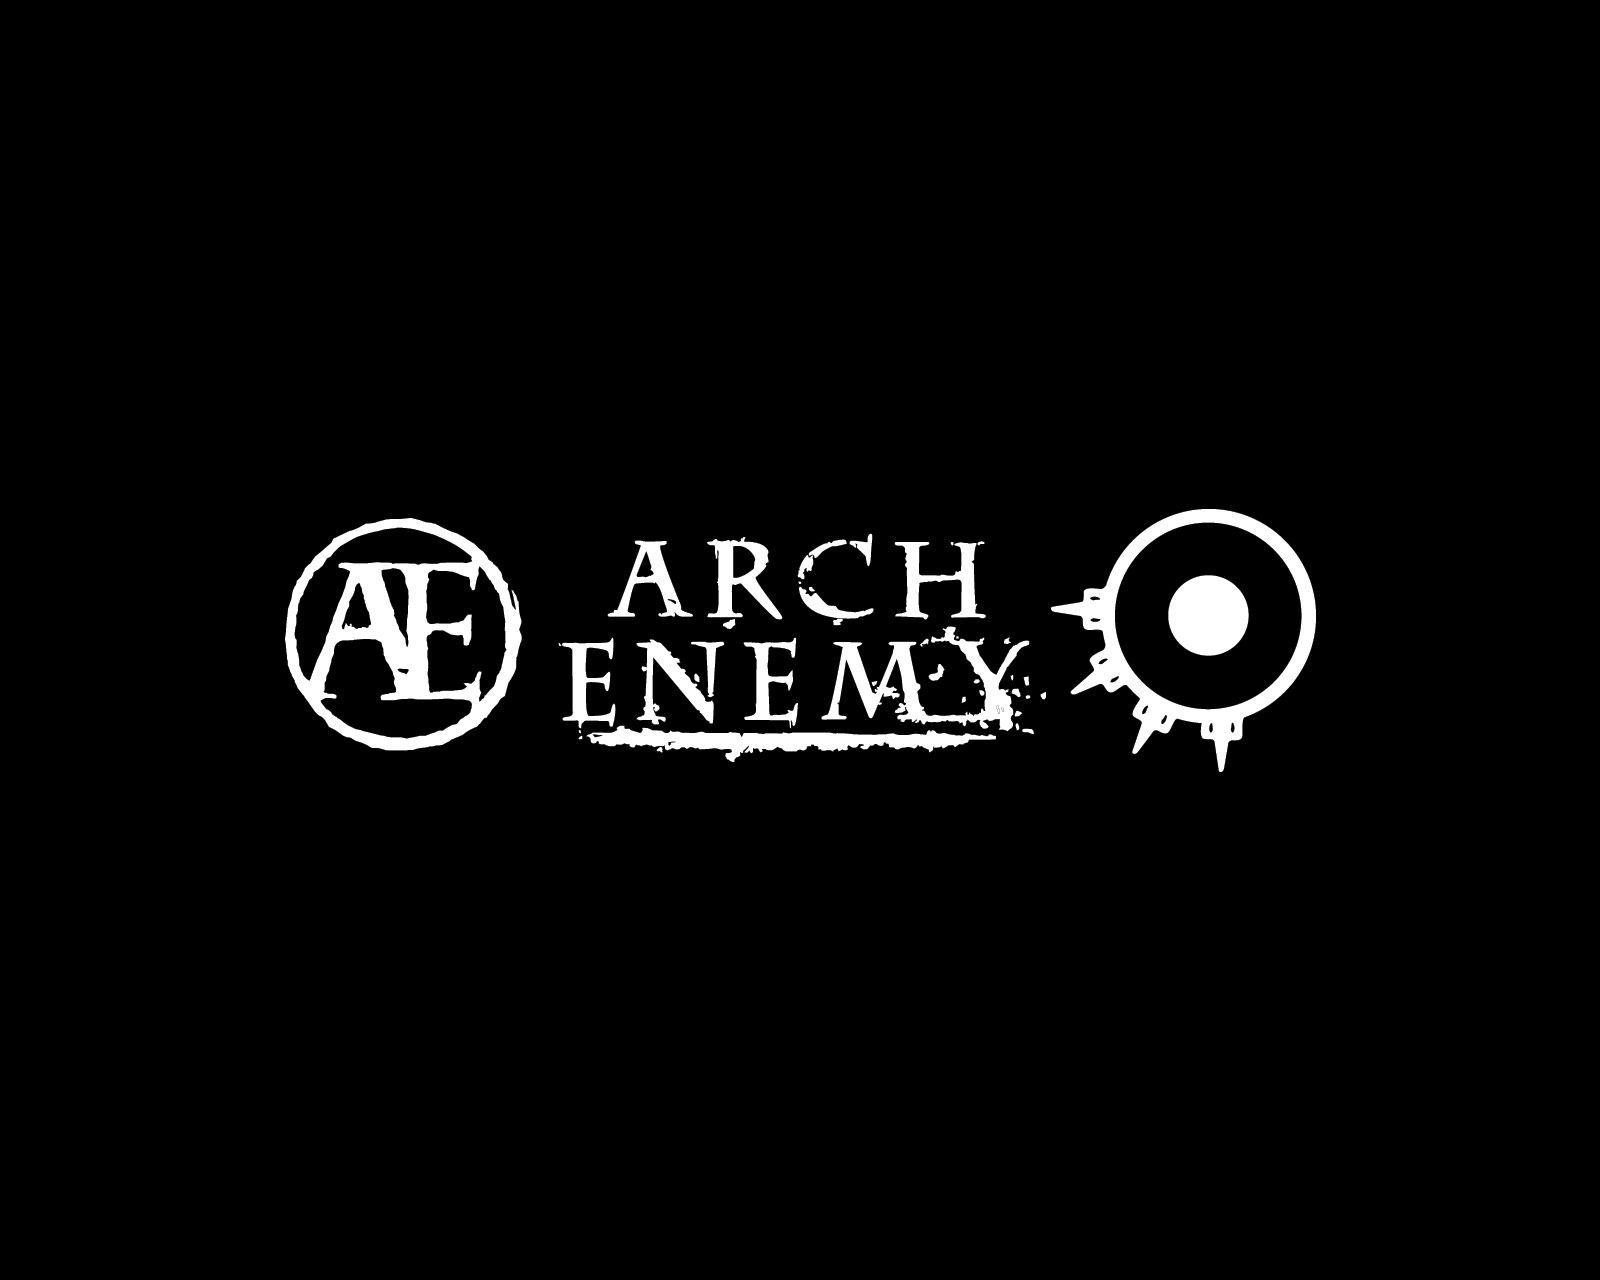 Arch Enemy Logo - Arch Enemy logo and wallpaper | Band logos - Rock band logos | Menn ...